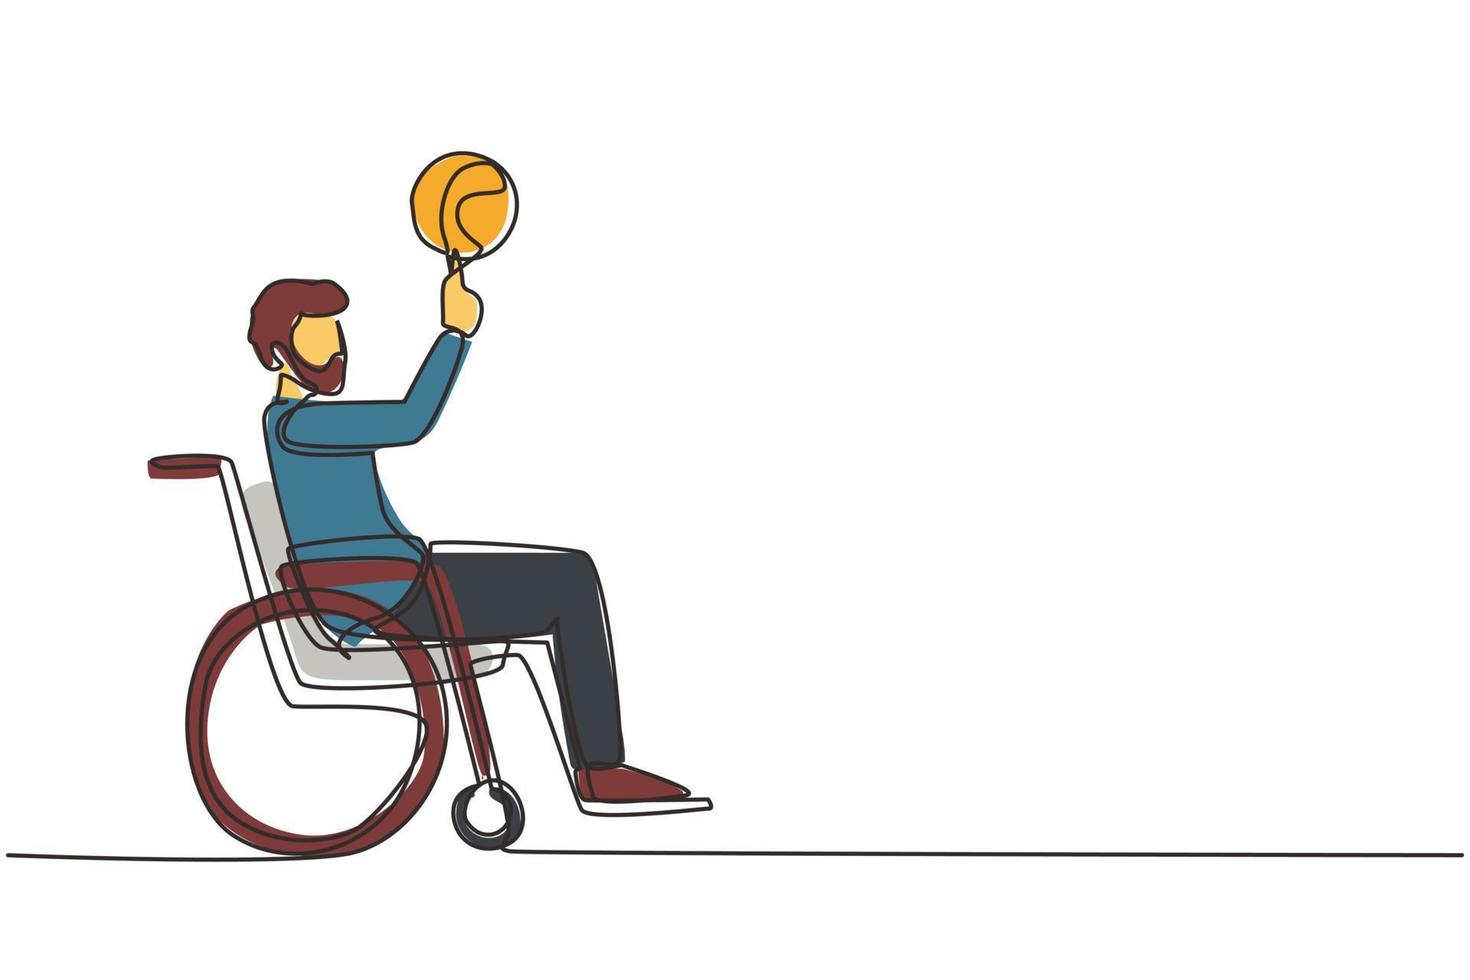 enda kontinuerlig linjeteckning arabisk kille i rullstol spelar basket. funktionshindrad person snurrar basket på fingret. träning för personer med funktionsnedsättning. en rad rita design vektorillustration vektor